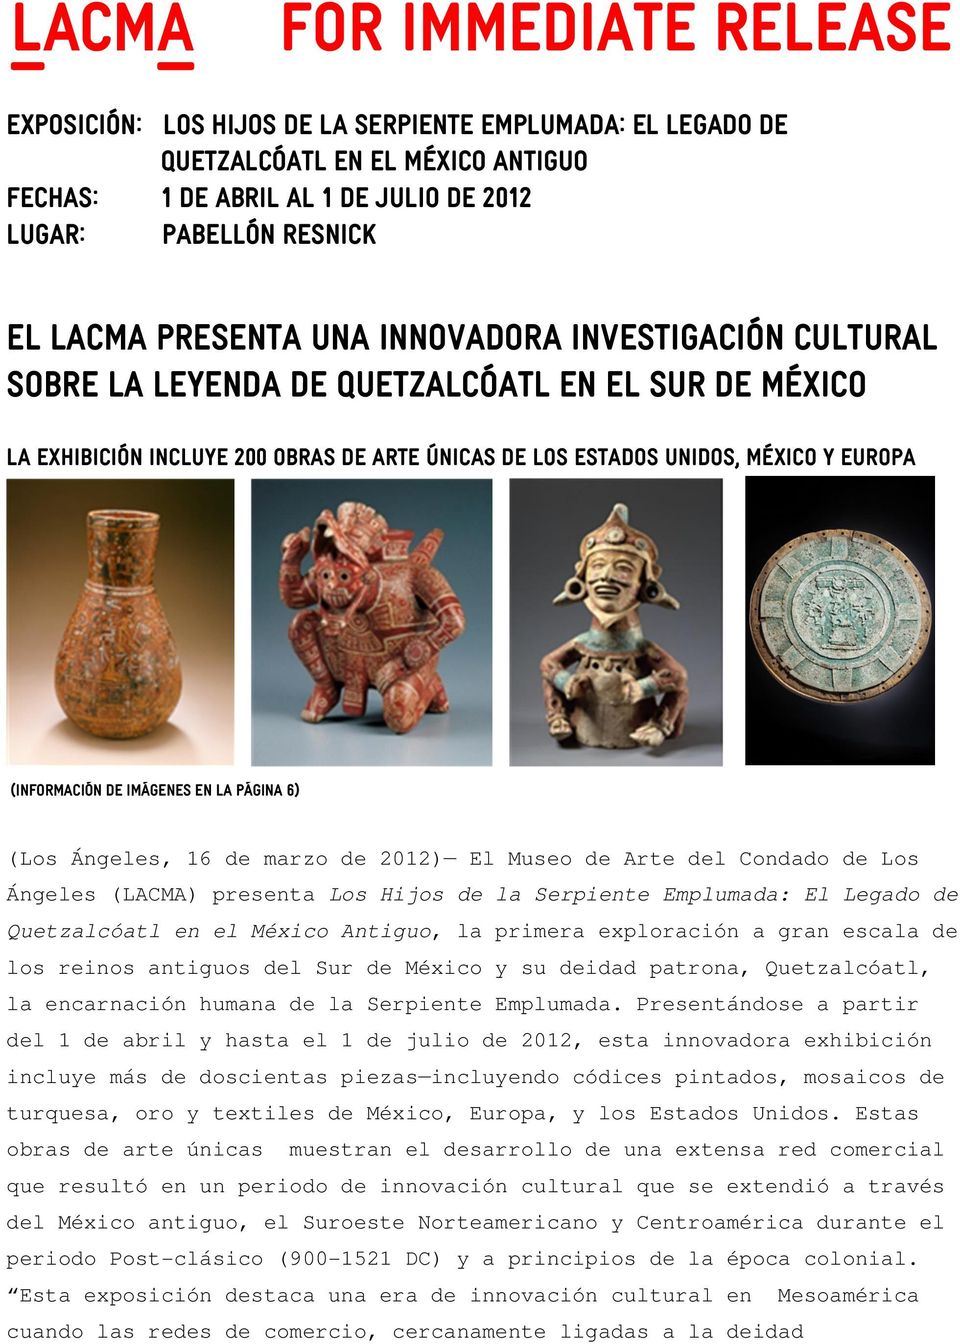 de imágenes en la página 6) (Los Ángeles, 16 de marzo de 2012) El Museo de Arte del Condado de Los Ángeles (LACMA) presenta Los Hijos de la Serpiente Emplumada: El Legado de Quetzalcóatl en el México